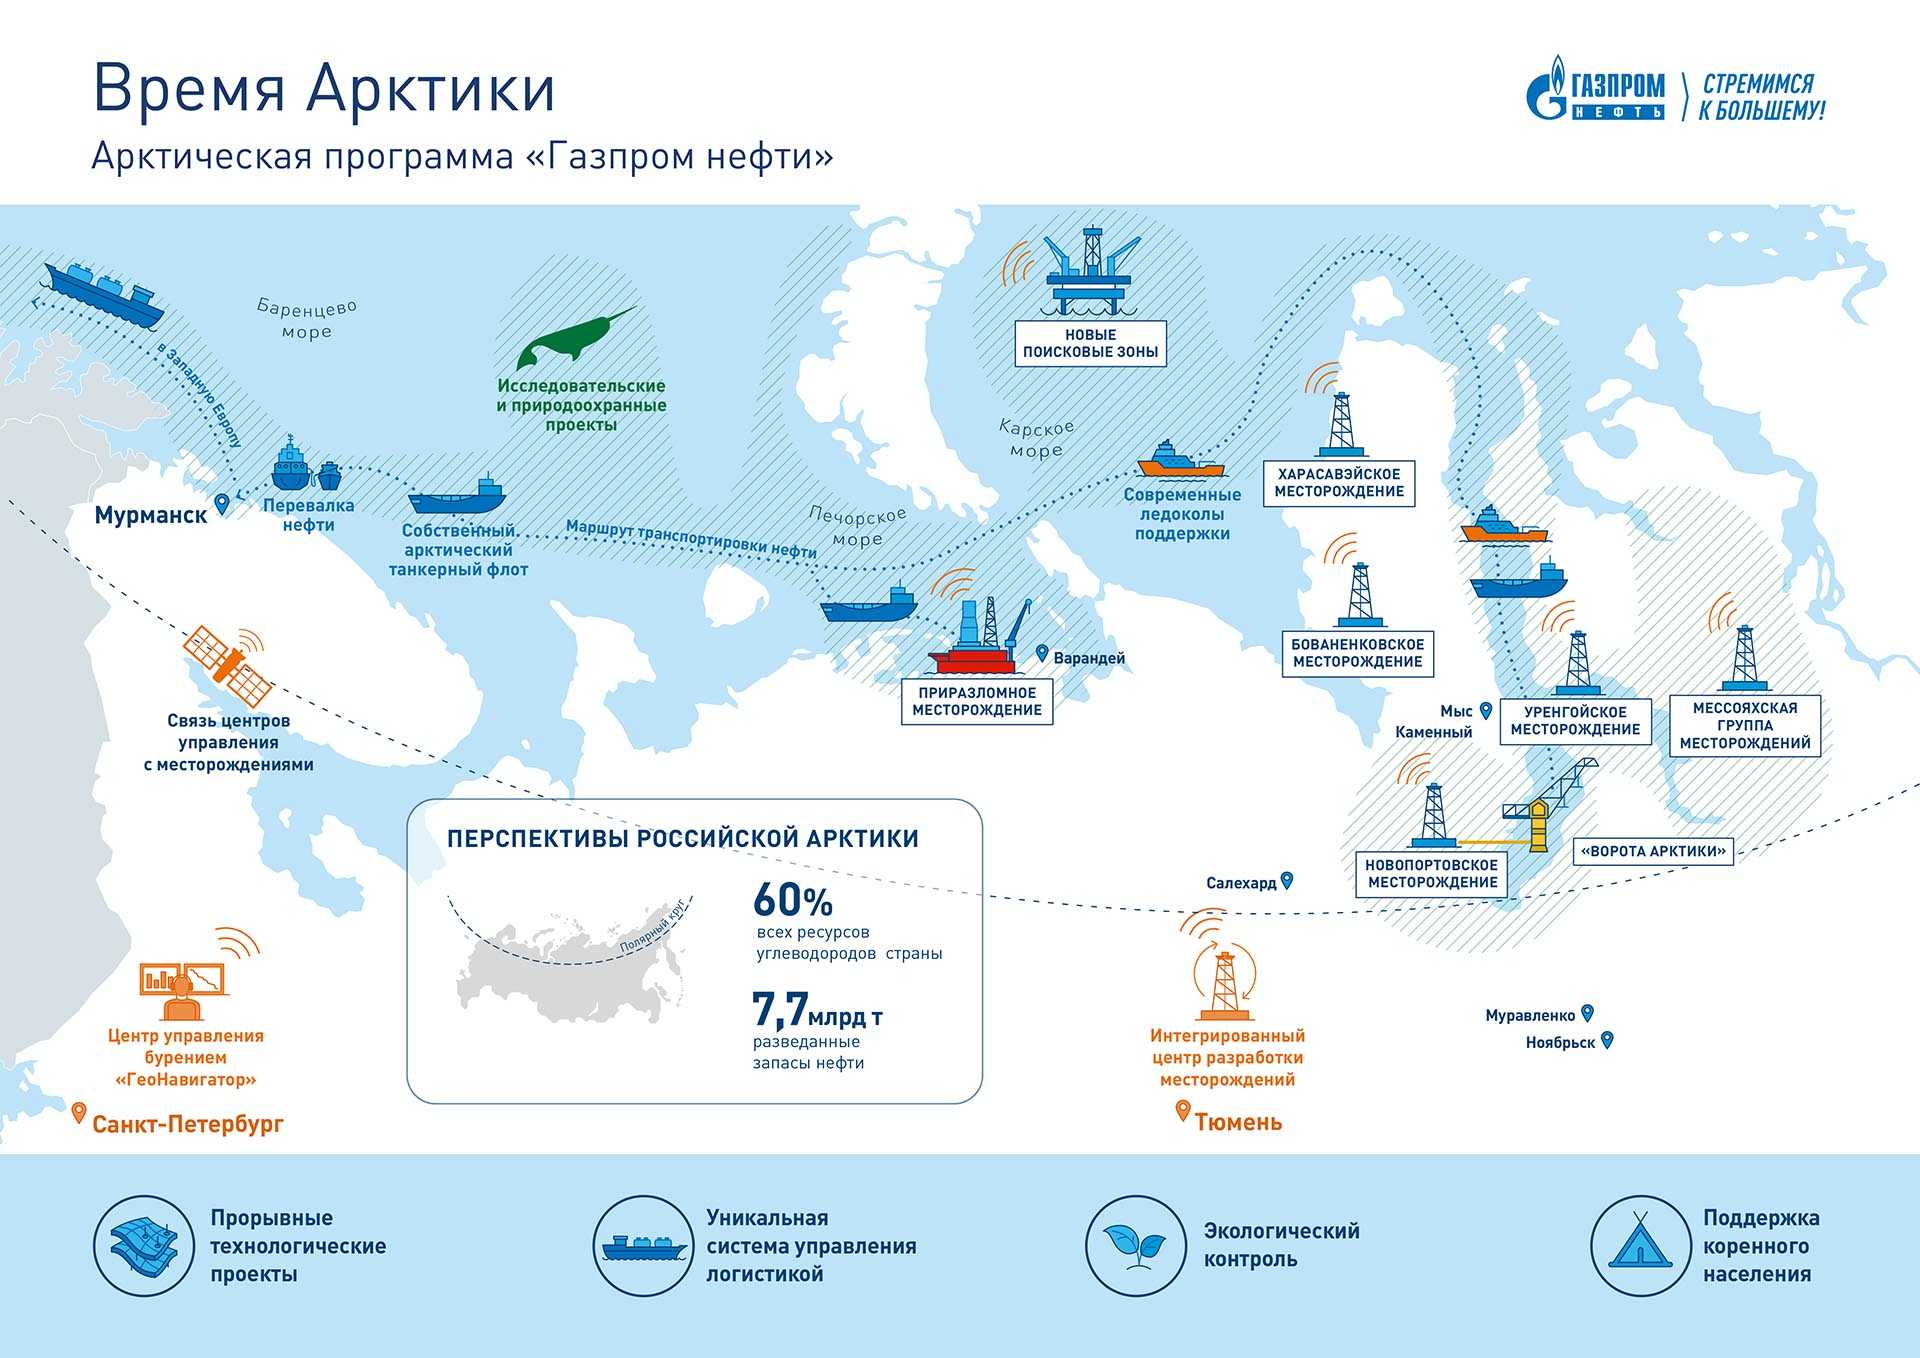 На камчатке намерены возобновить морское  пассажирское сообщение :: электронная версия газеты "российское судоходство"